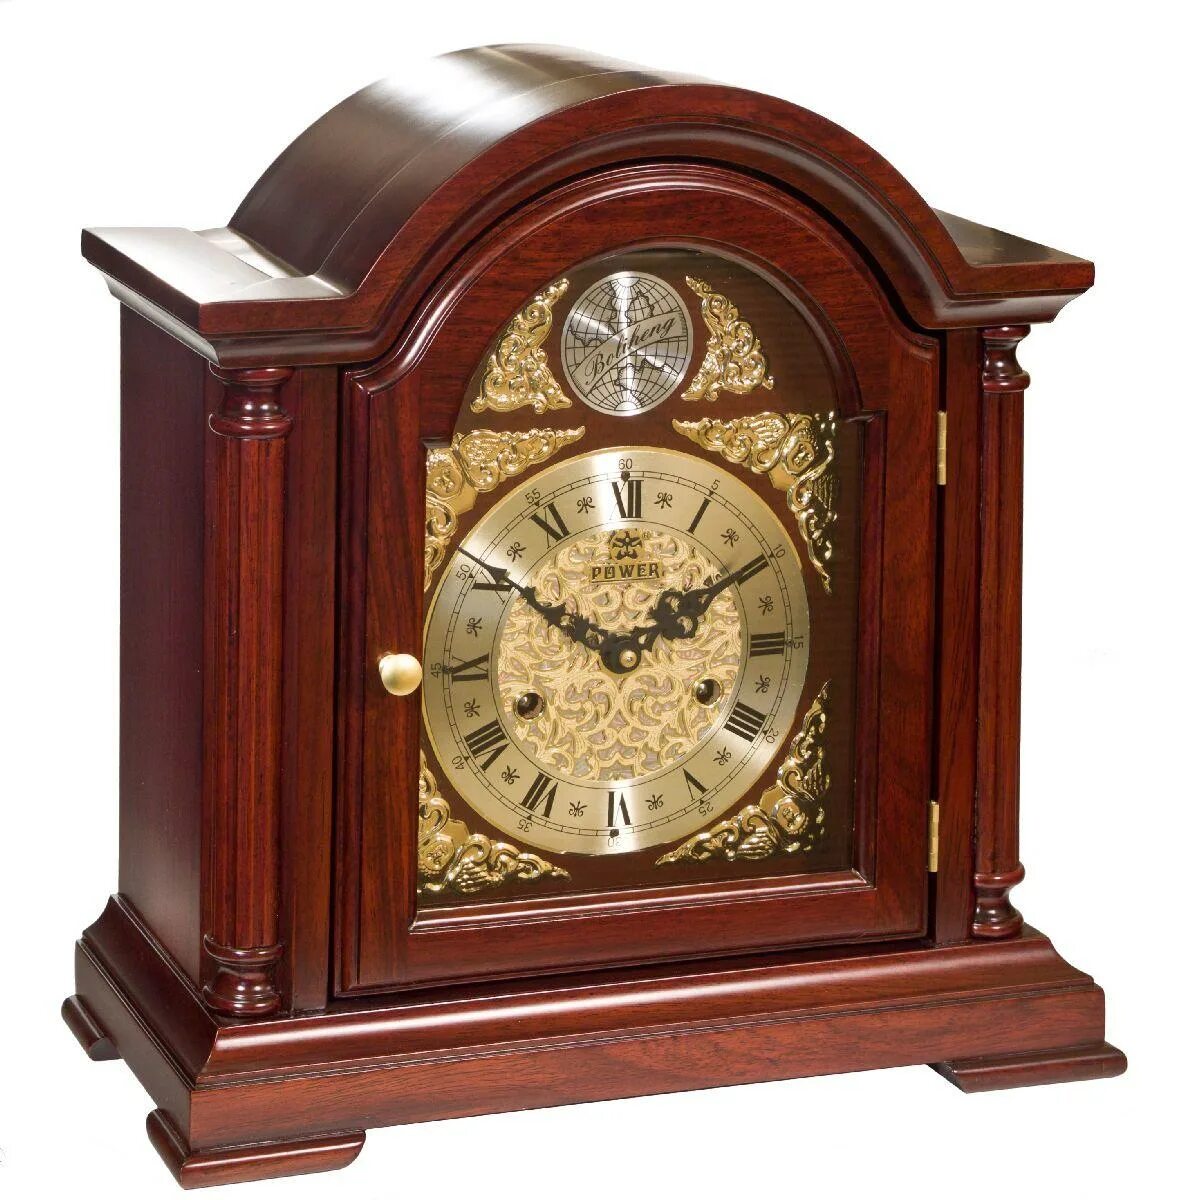 Часы каминные Vostok. Каминные часы т-9728-2 каминные/настольные часы с боем Восток. Механические ЧАСЫЧАСЫ. Интернет магазин часов настольные